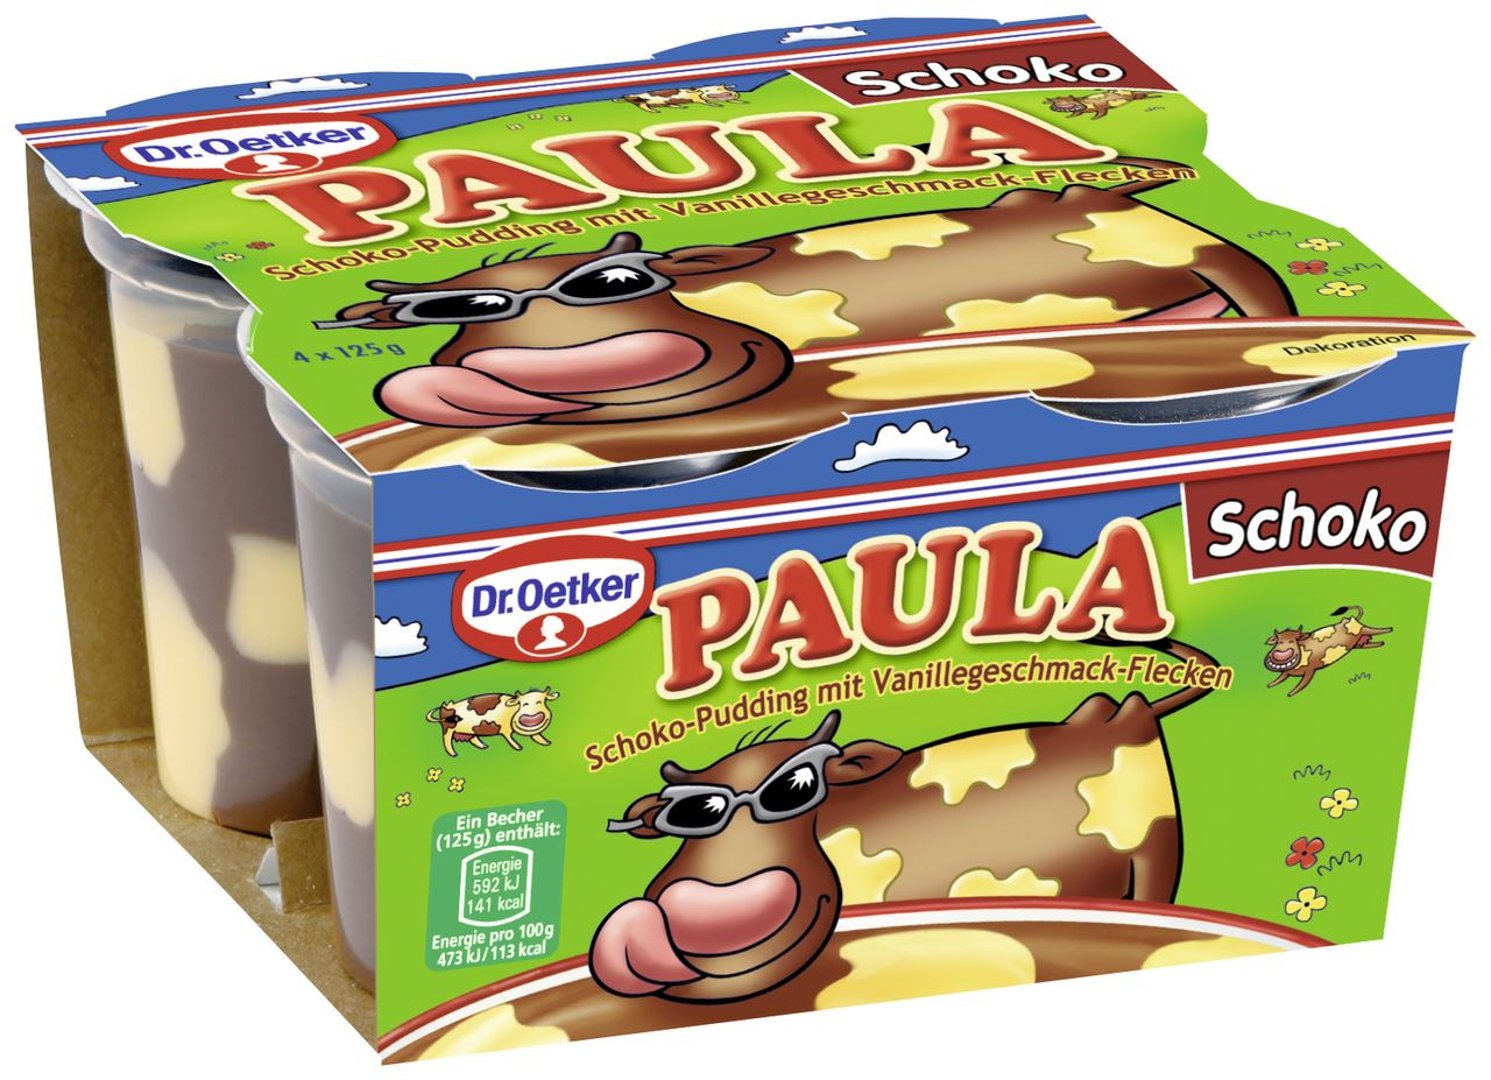 Paula - Pudding mit Flecken Schoko mit Vanille 4 x 125 g, 3,9 % Fett - 3 x 500 g Packungen